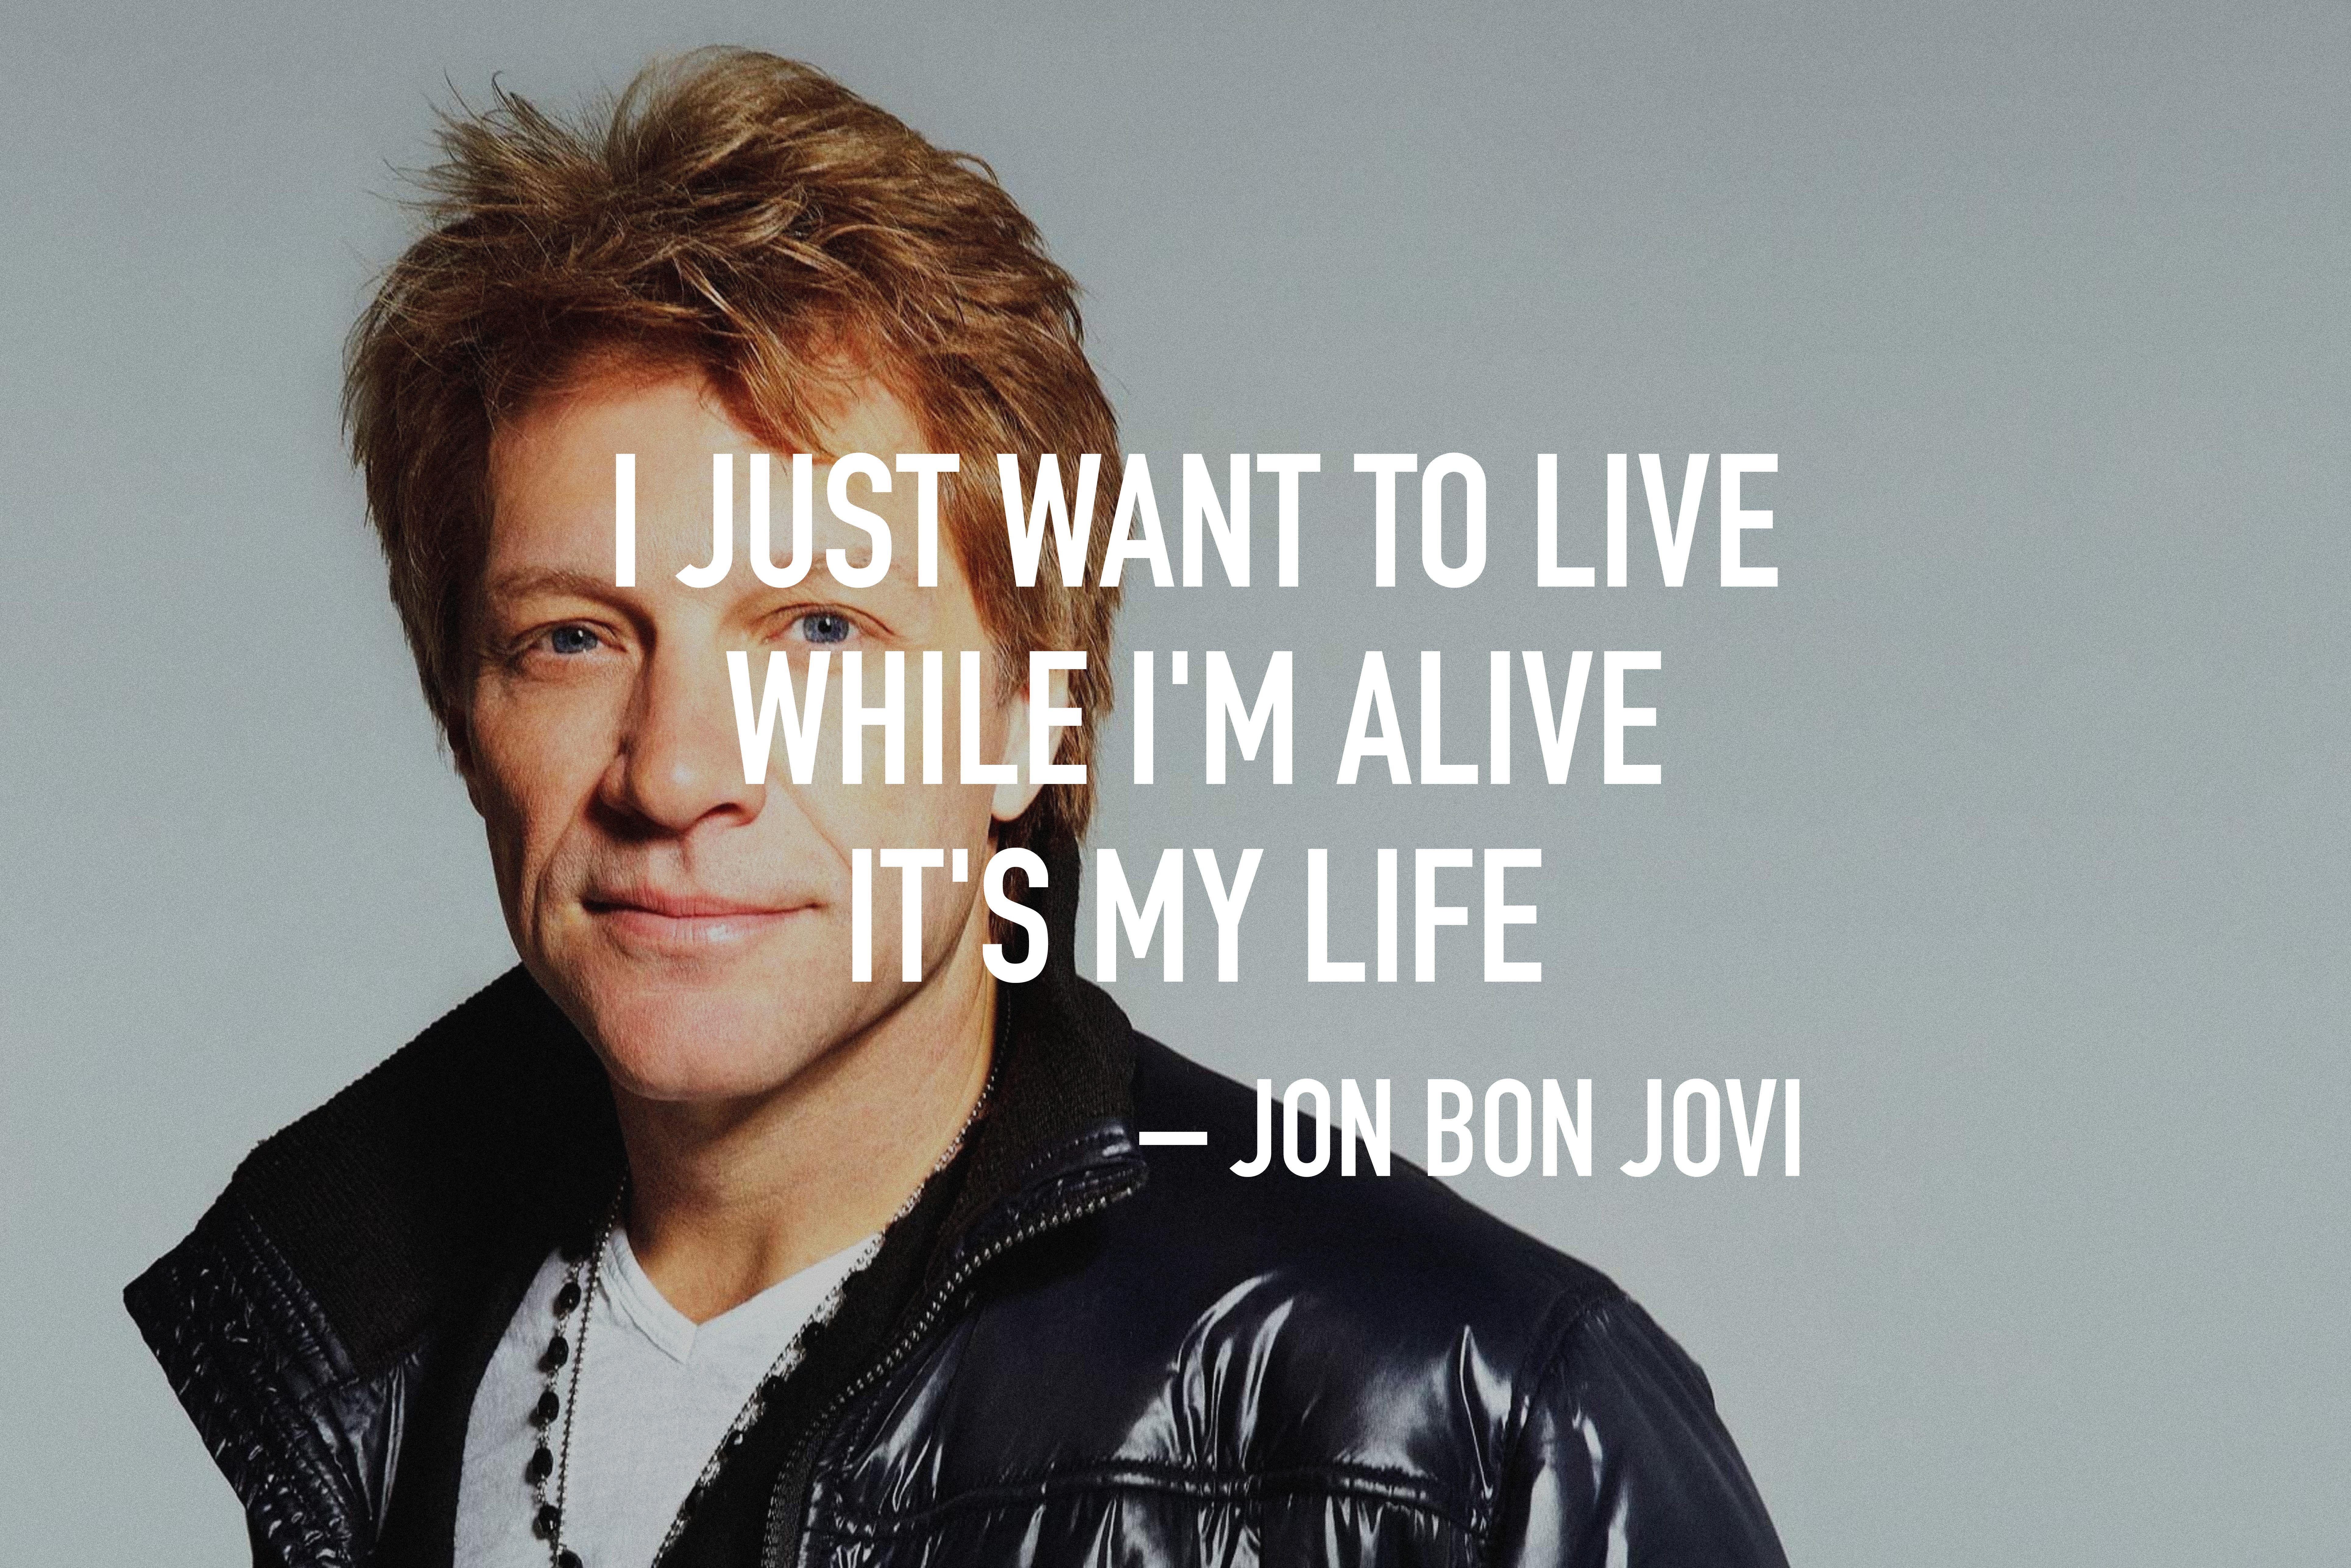 The Most Motivational Wallpaper - De Bon Jovi 2019 is hd wallpapers & b...